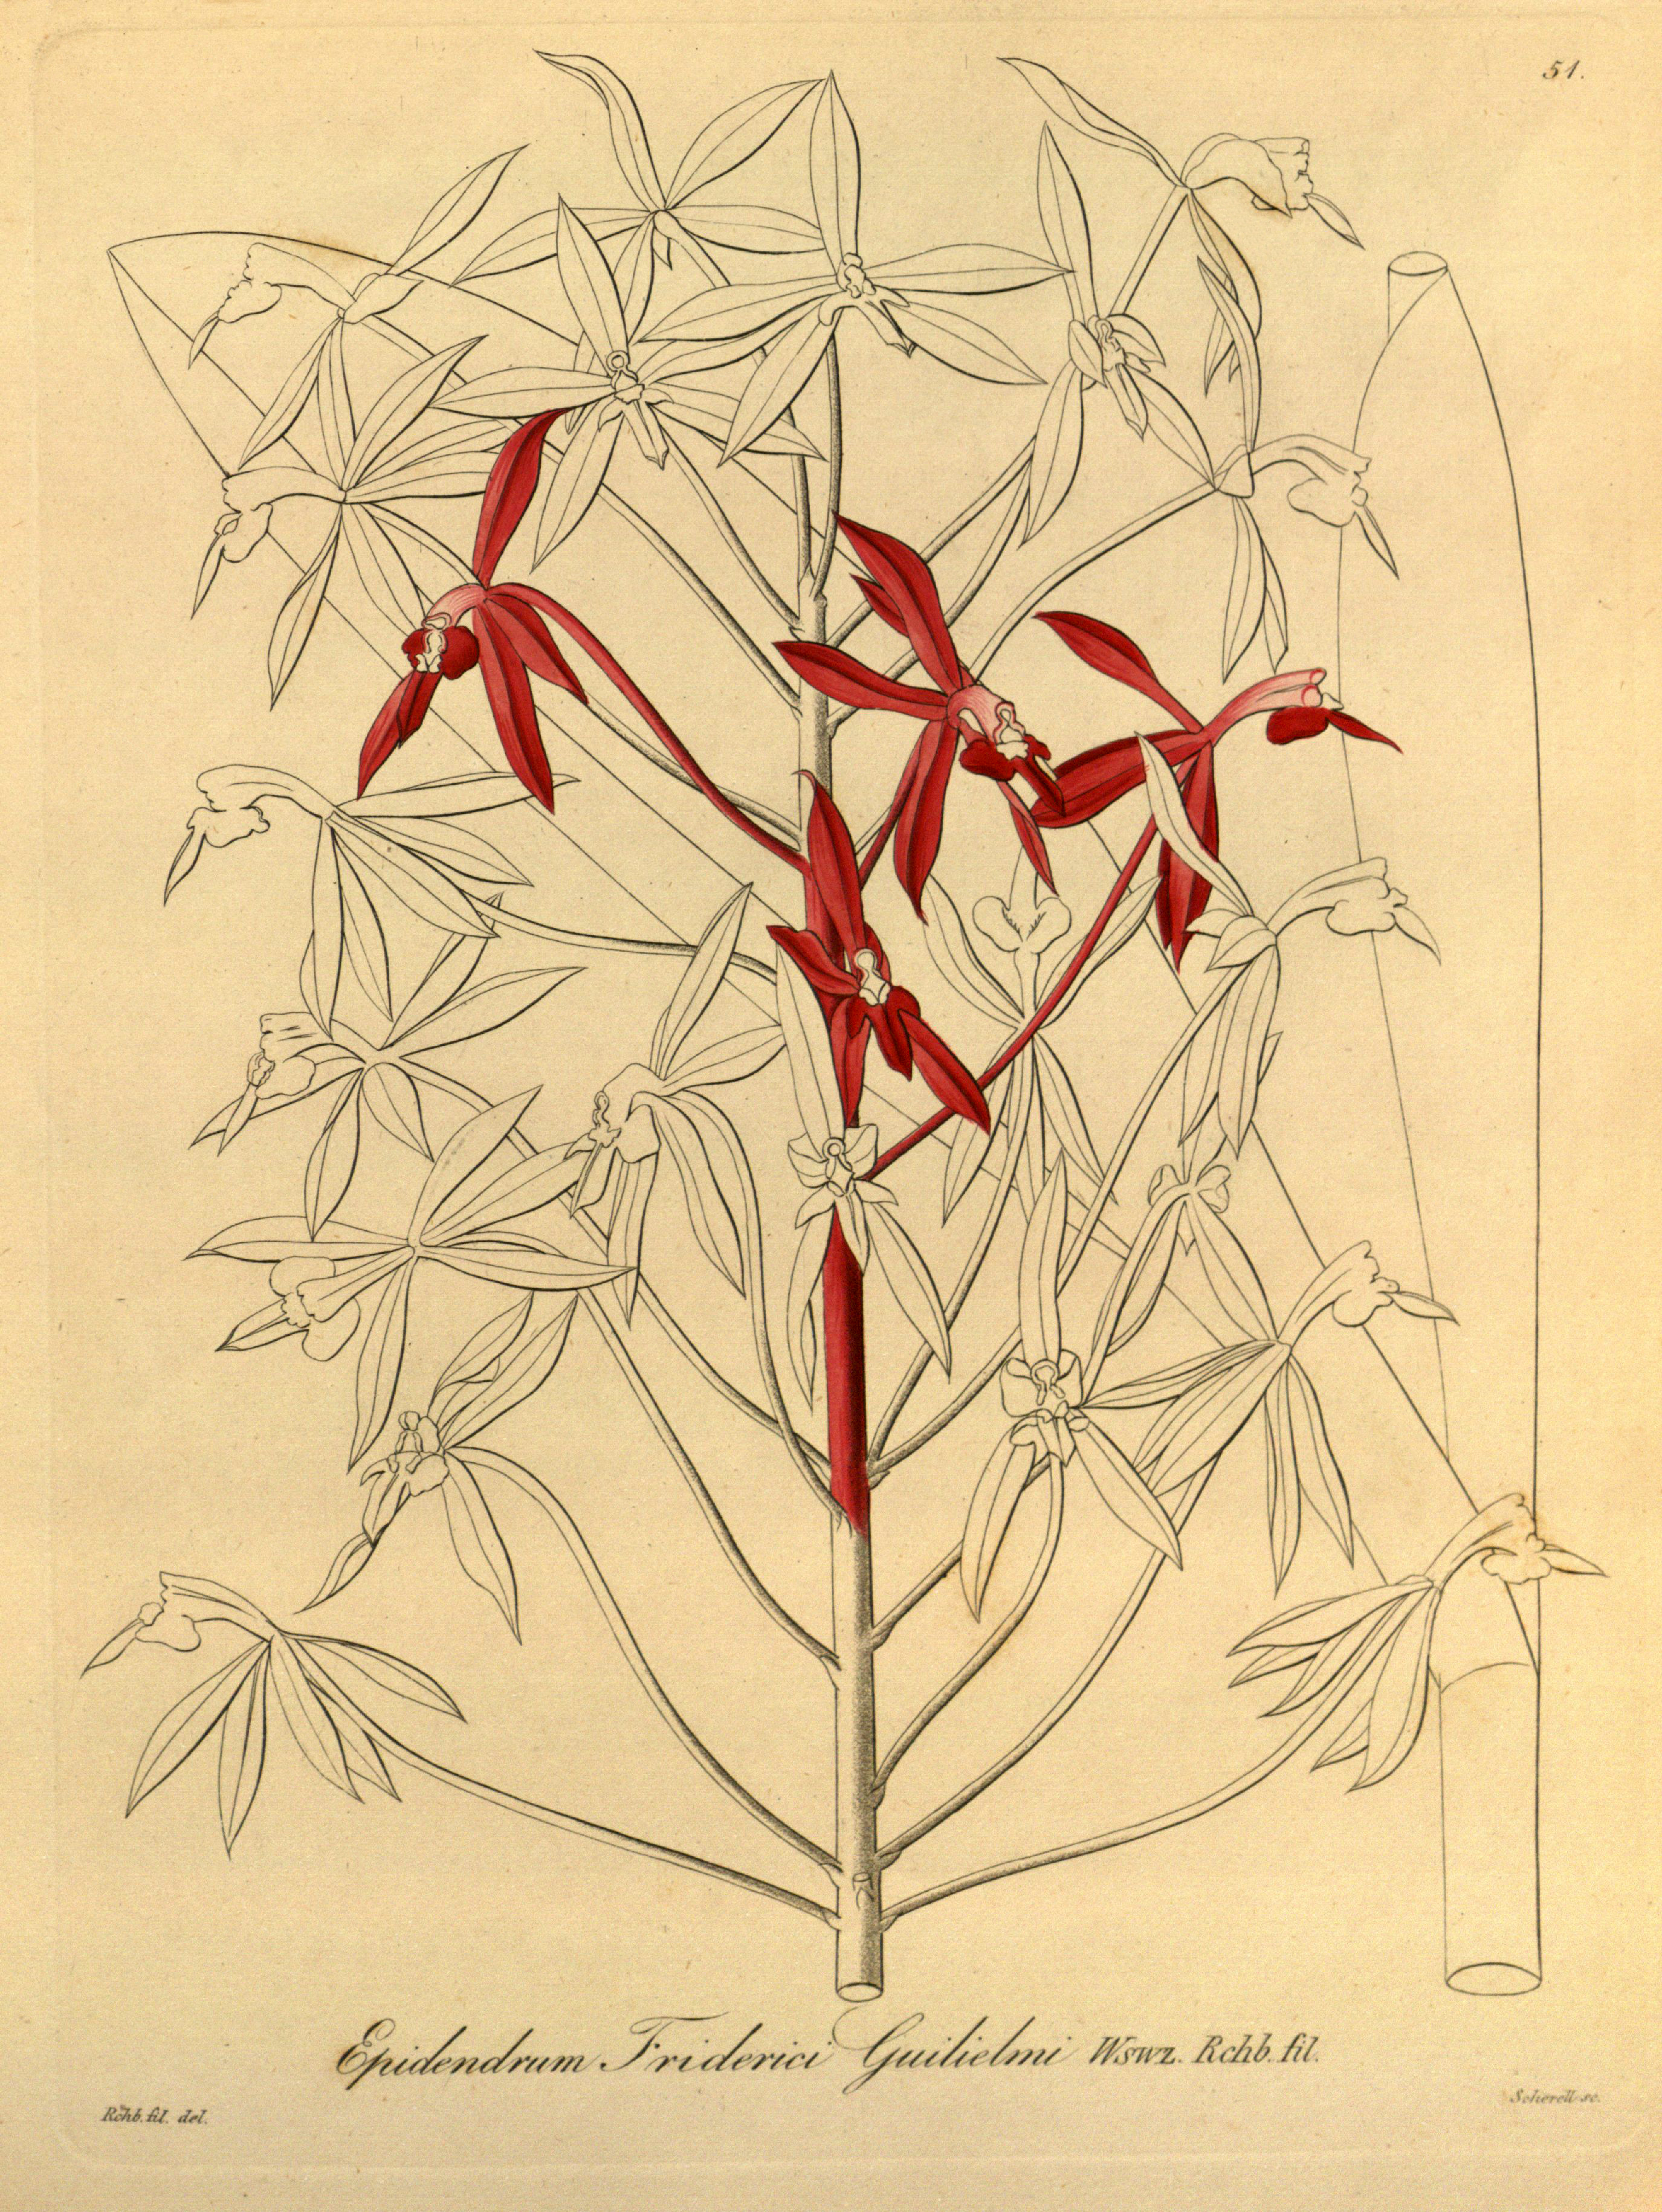 Epidendrum friderici-guilielmi - Xenia vol 1 pl 51 (1858)